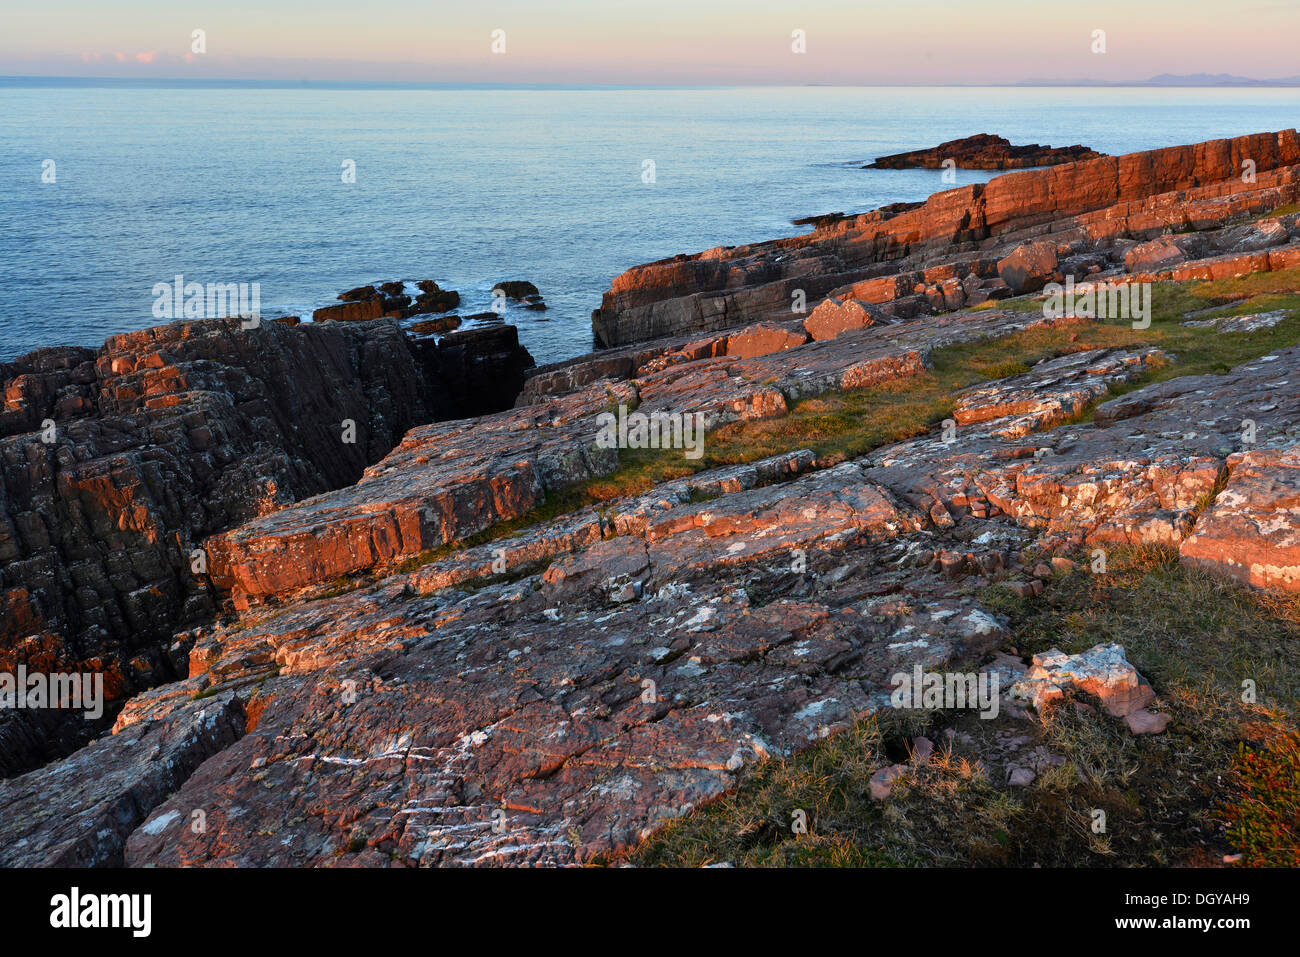 Abends Blick auf den Atlantik von der Rua Reidh Lighthouse, Melvaig, Gairloch, Wester Ross, Schottland, Vereinigtes Königreich, Europa Stockfoto